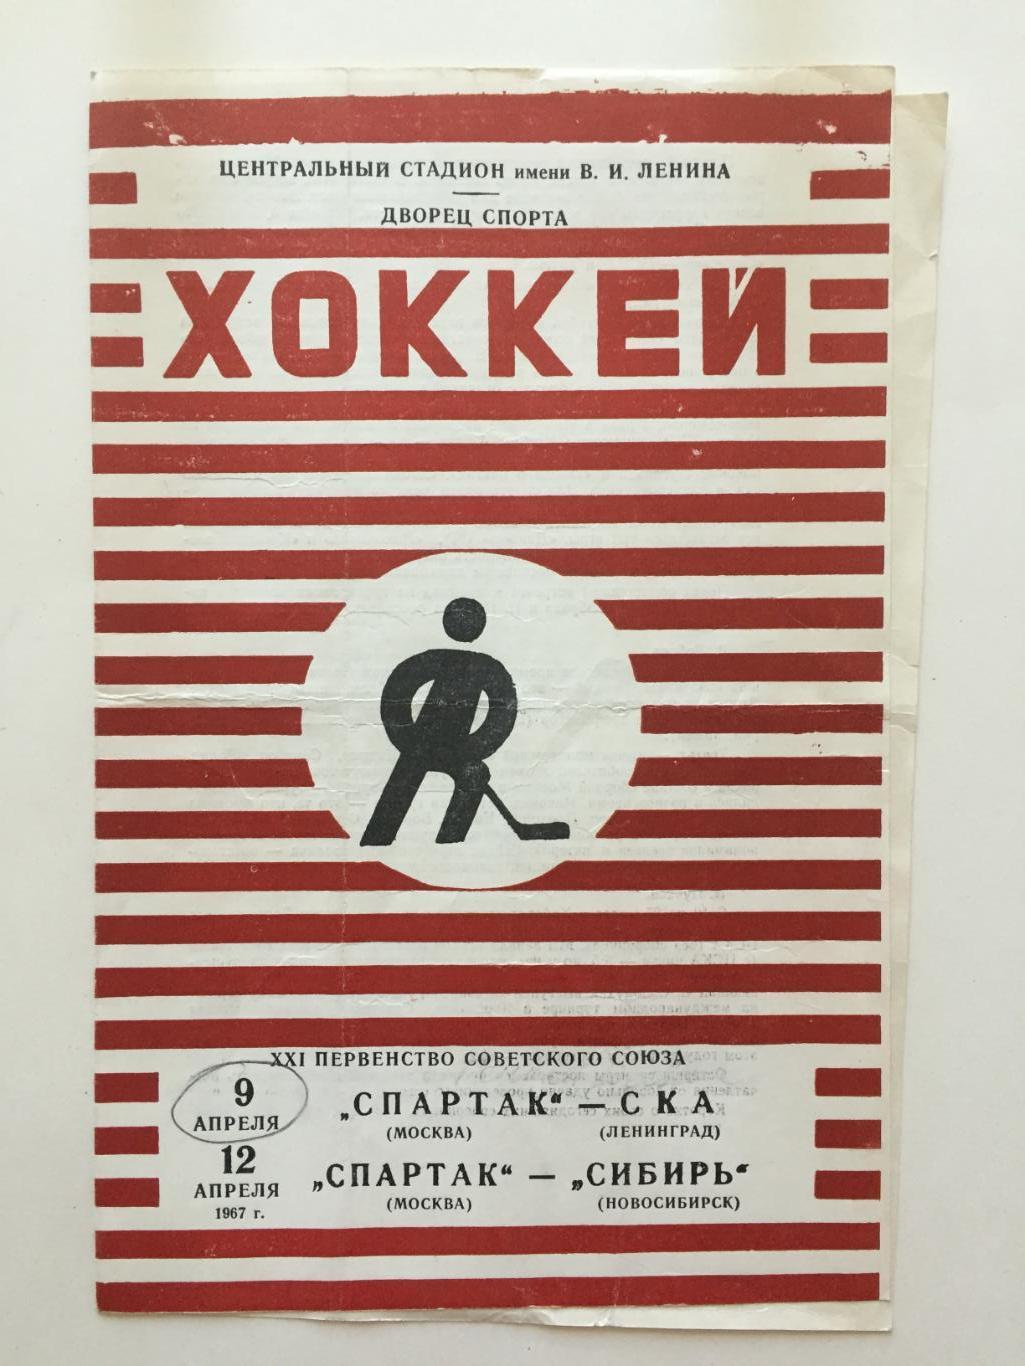 Спартак Москва - СКА Ленинград,Сибирь Новосибирск 09,12.04.1967